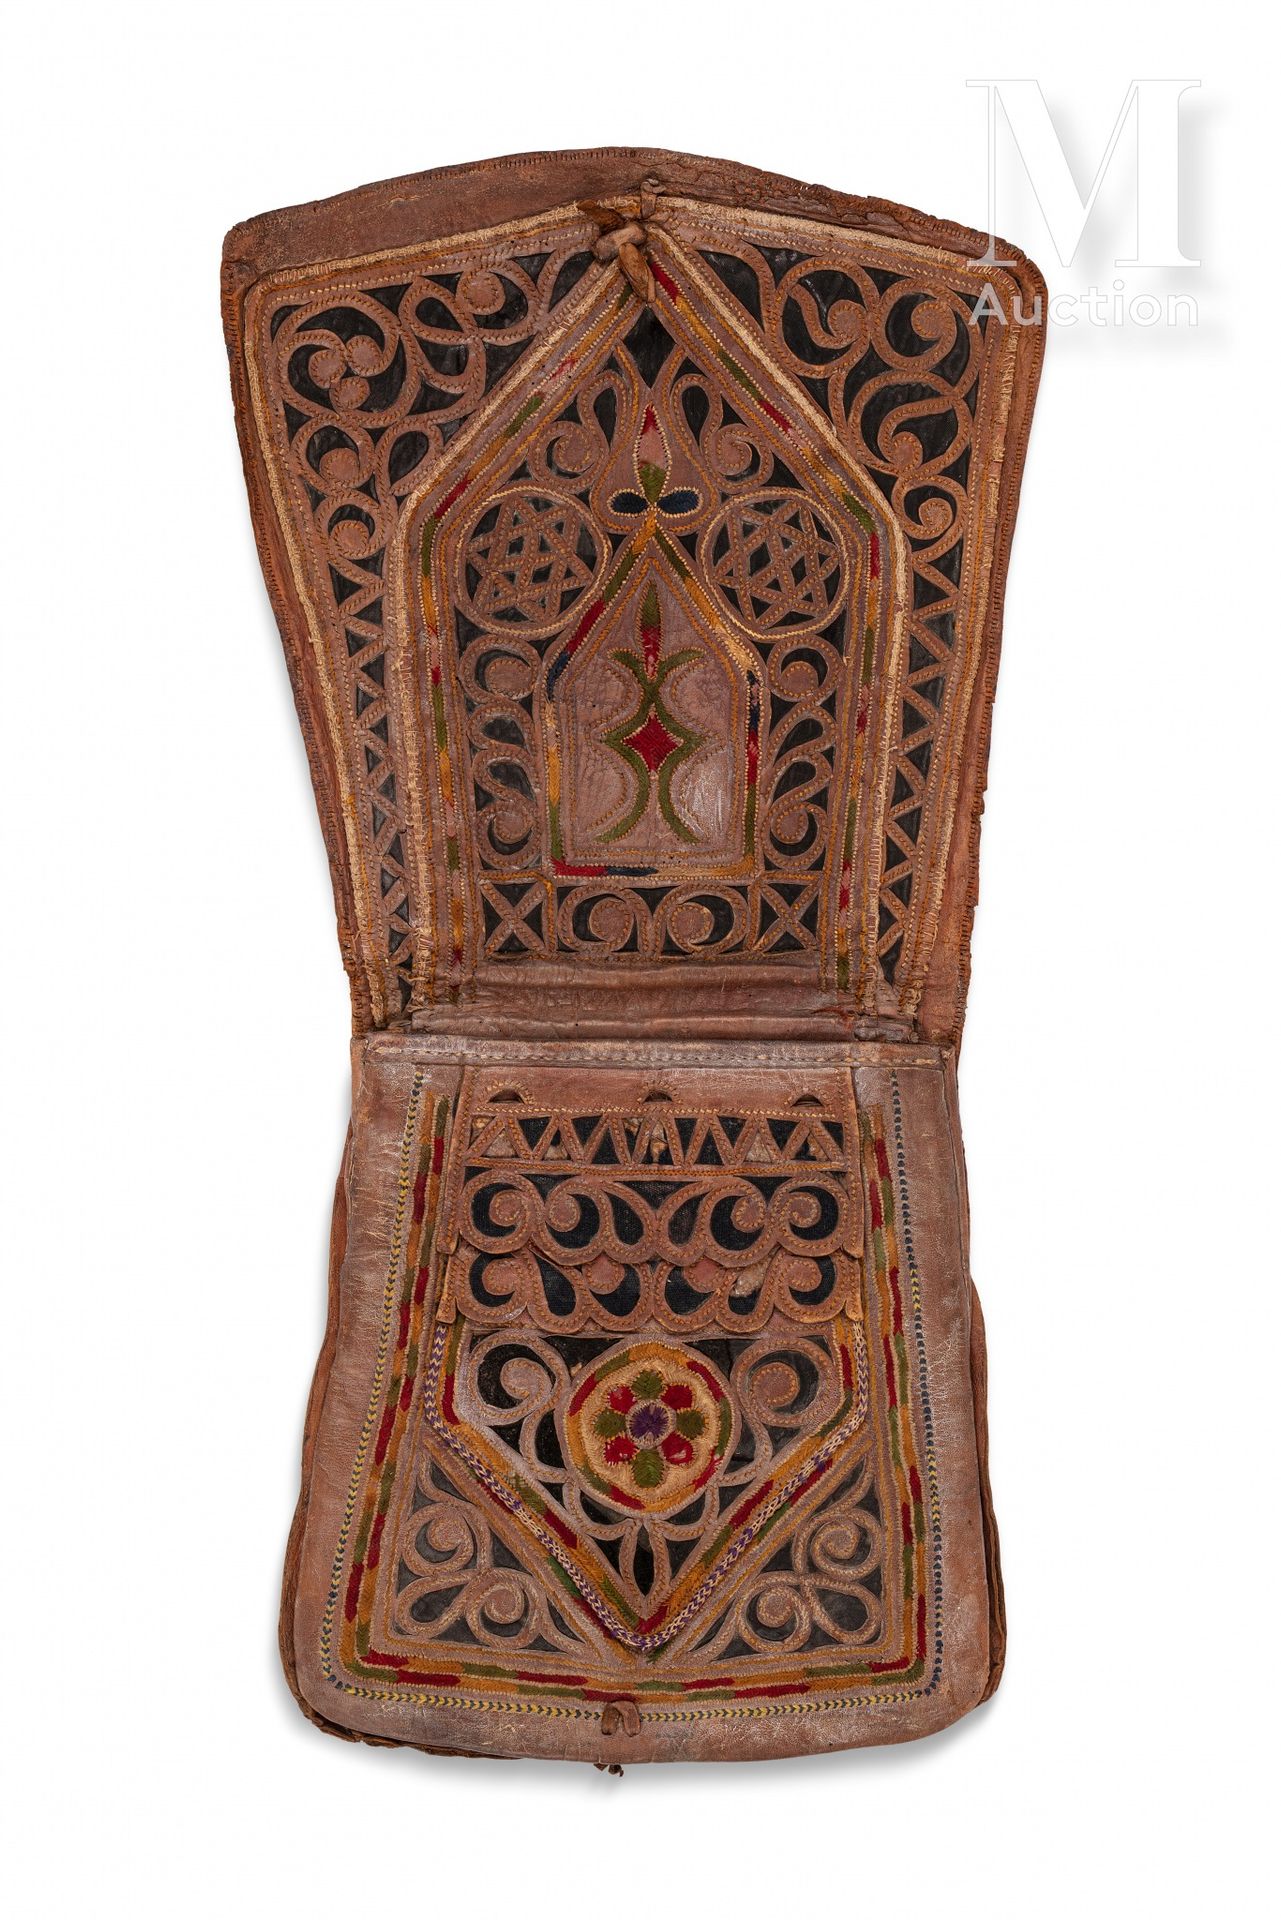 Choukara - Sac d'homme Marokko, 19. Jahrhundert

Mit Seidenfäden bestickte Leder&hellip;